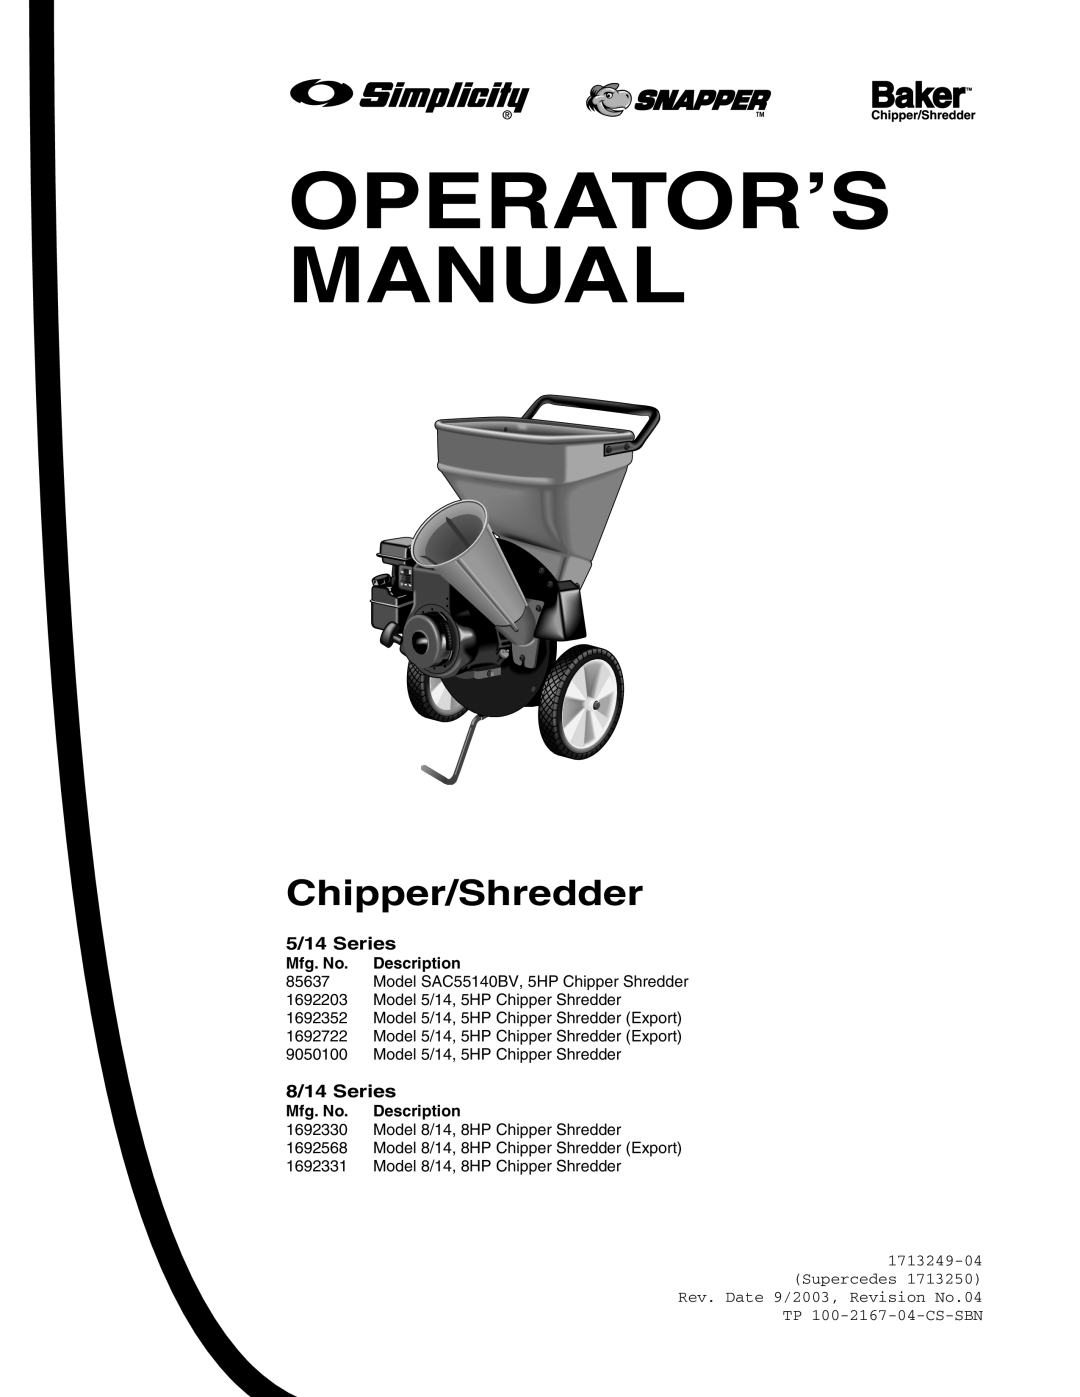 Snapper 5/14, 8/14, SAC55140BV manual 5/14 Series, 8/14 Series, Operator’S Manual, Chipper/Shredder 